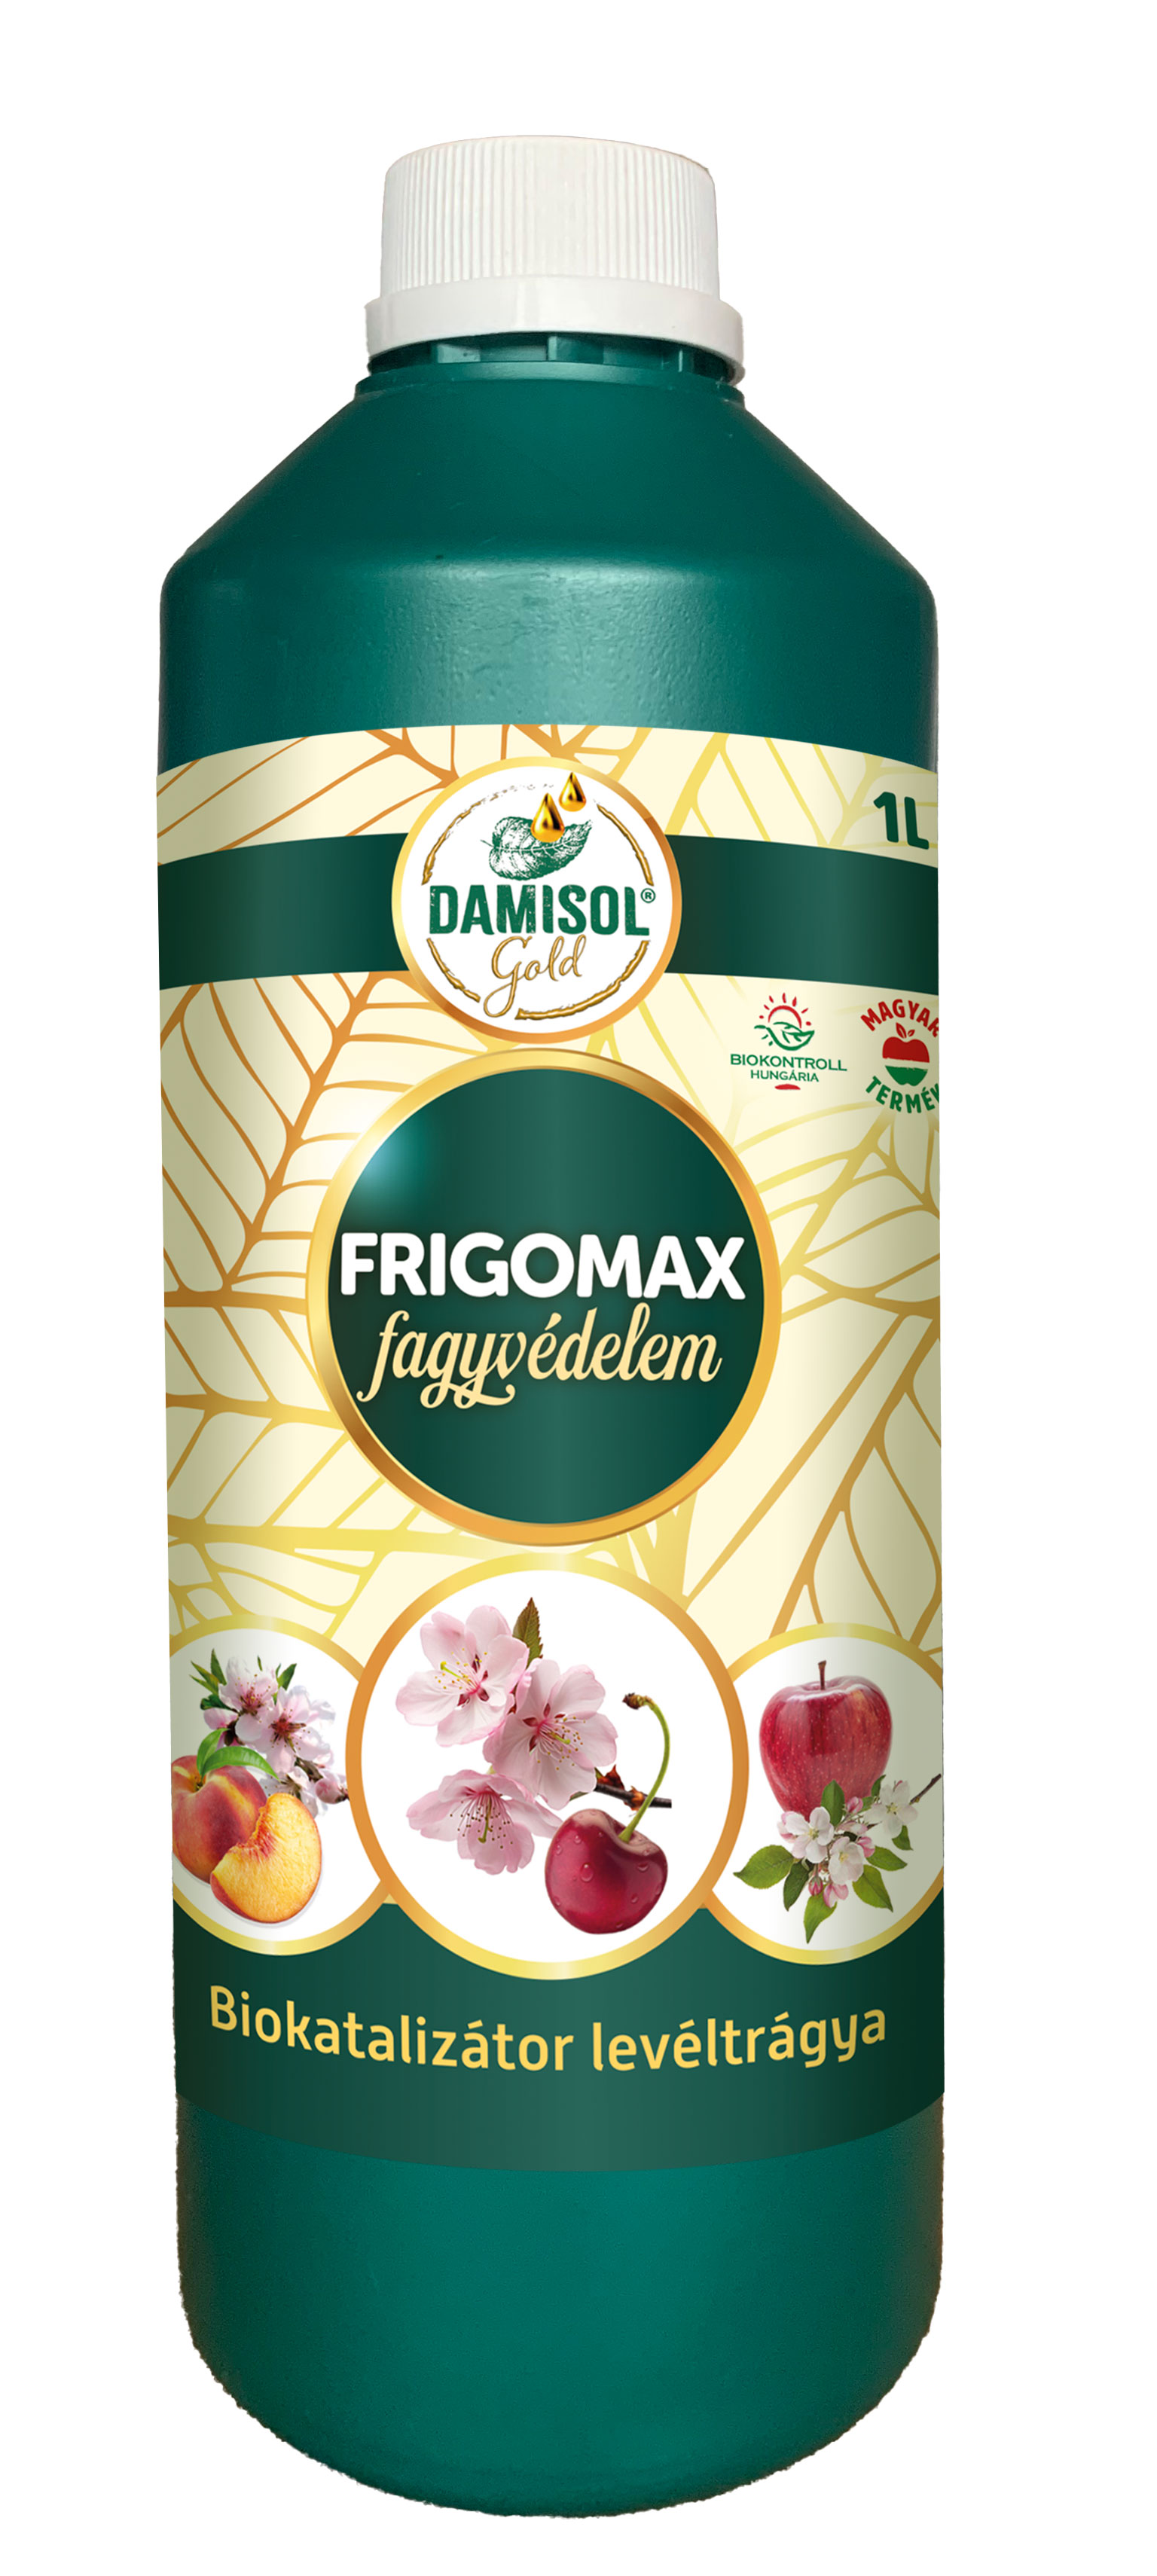 Damisol Gold Frigomax Frostschutz 1 l